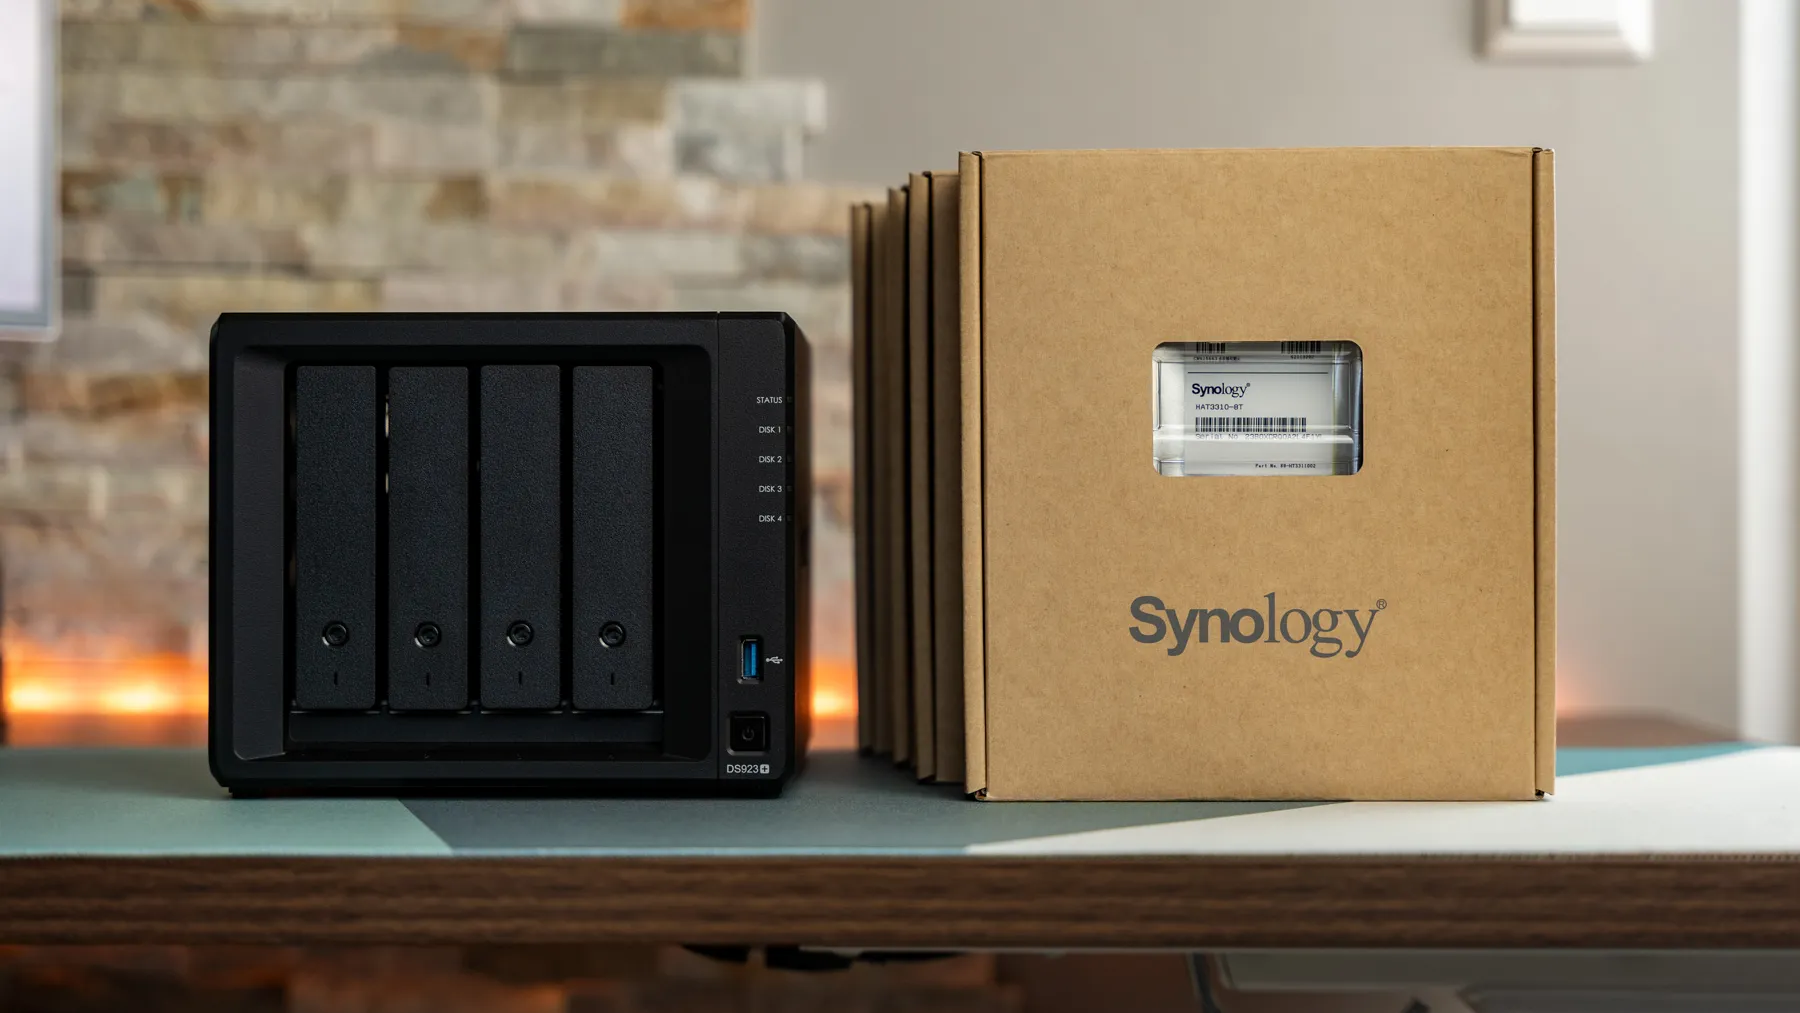 Synology-NAS: Einrichtung und Zugriff via PC, TV & Smartphone